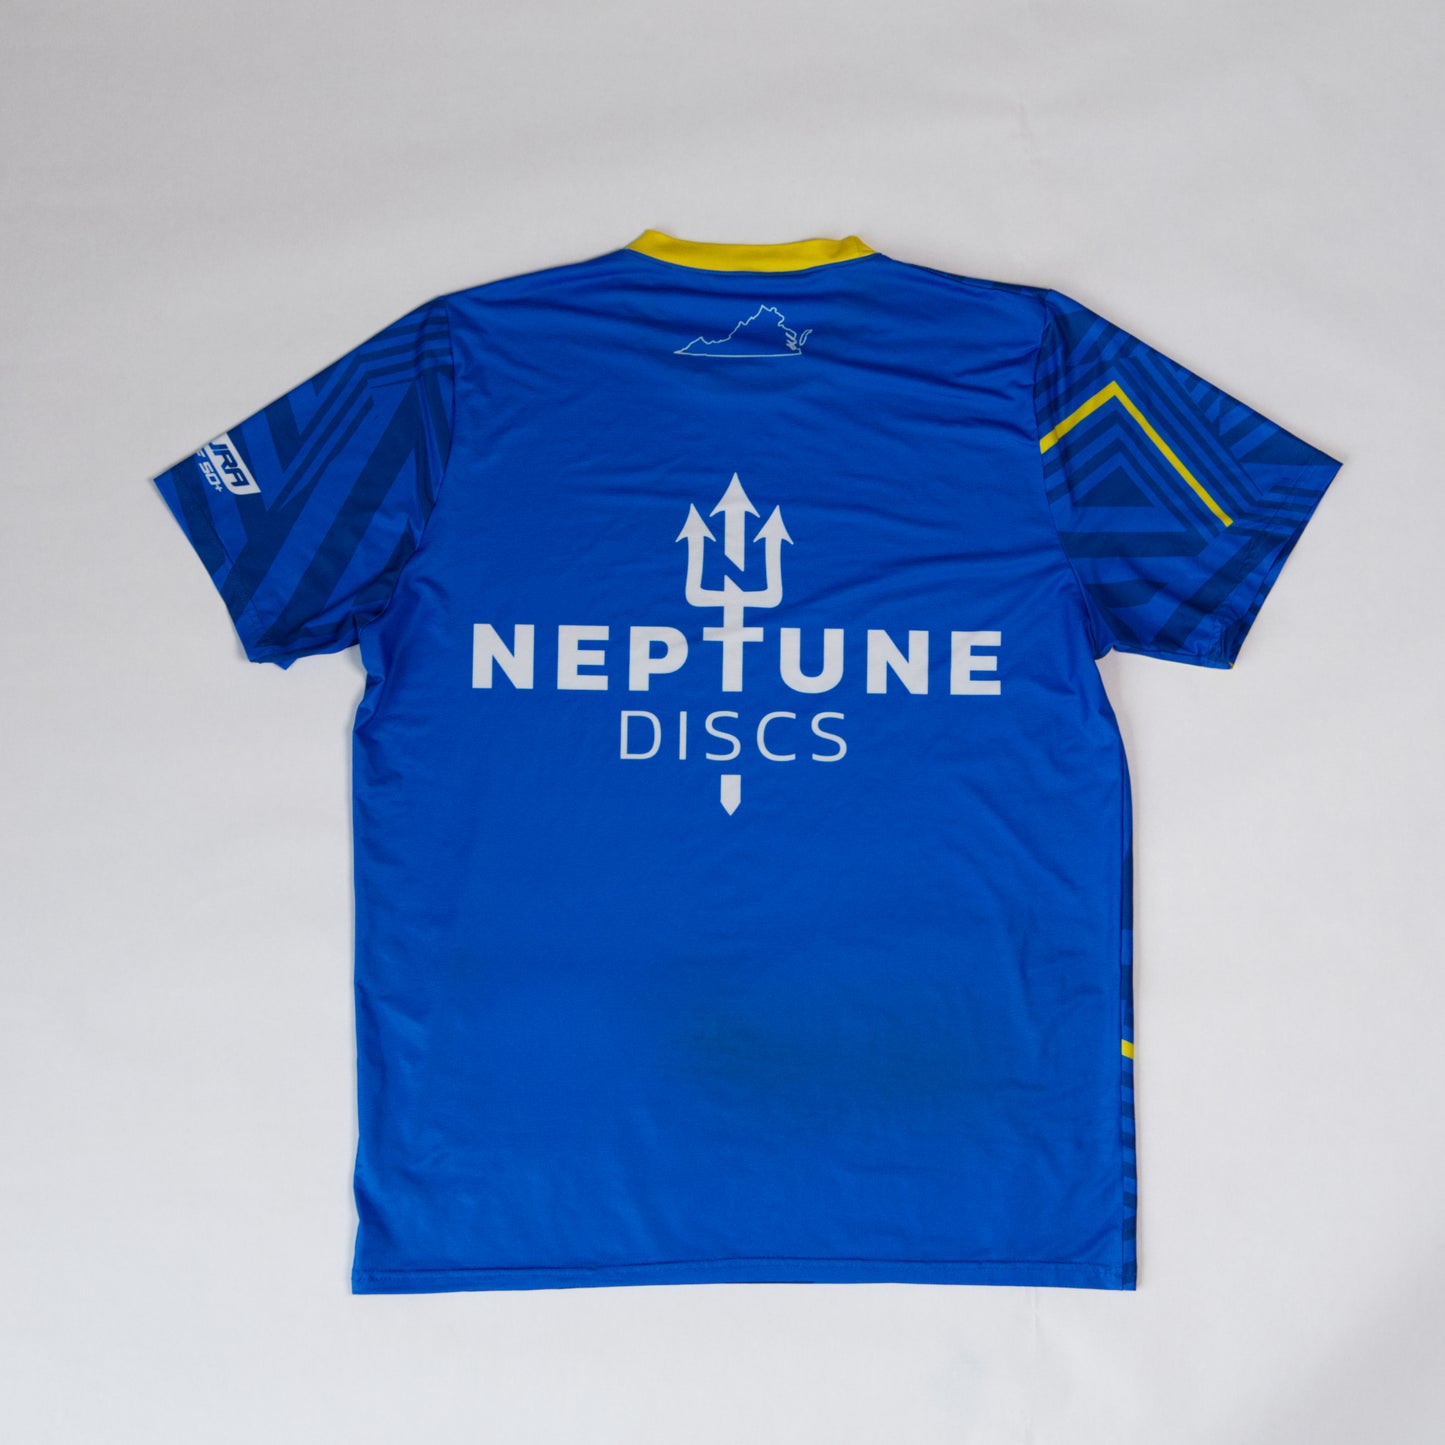 Neptune Discs - Team Jersey